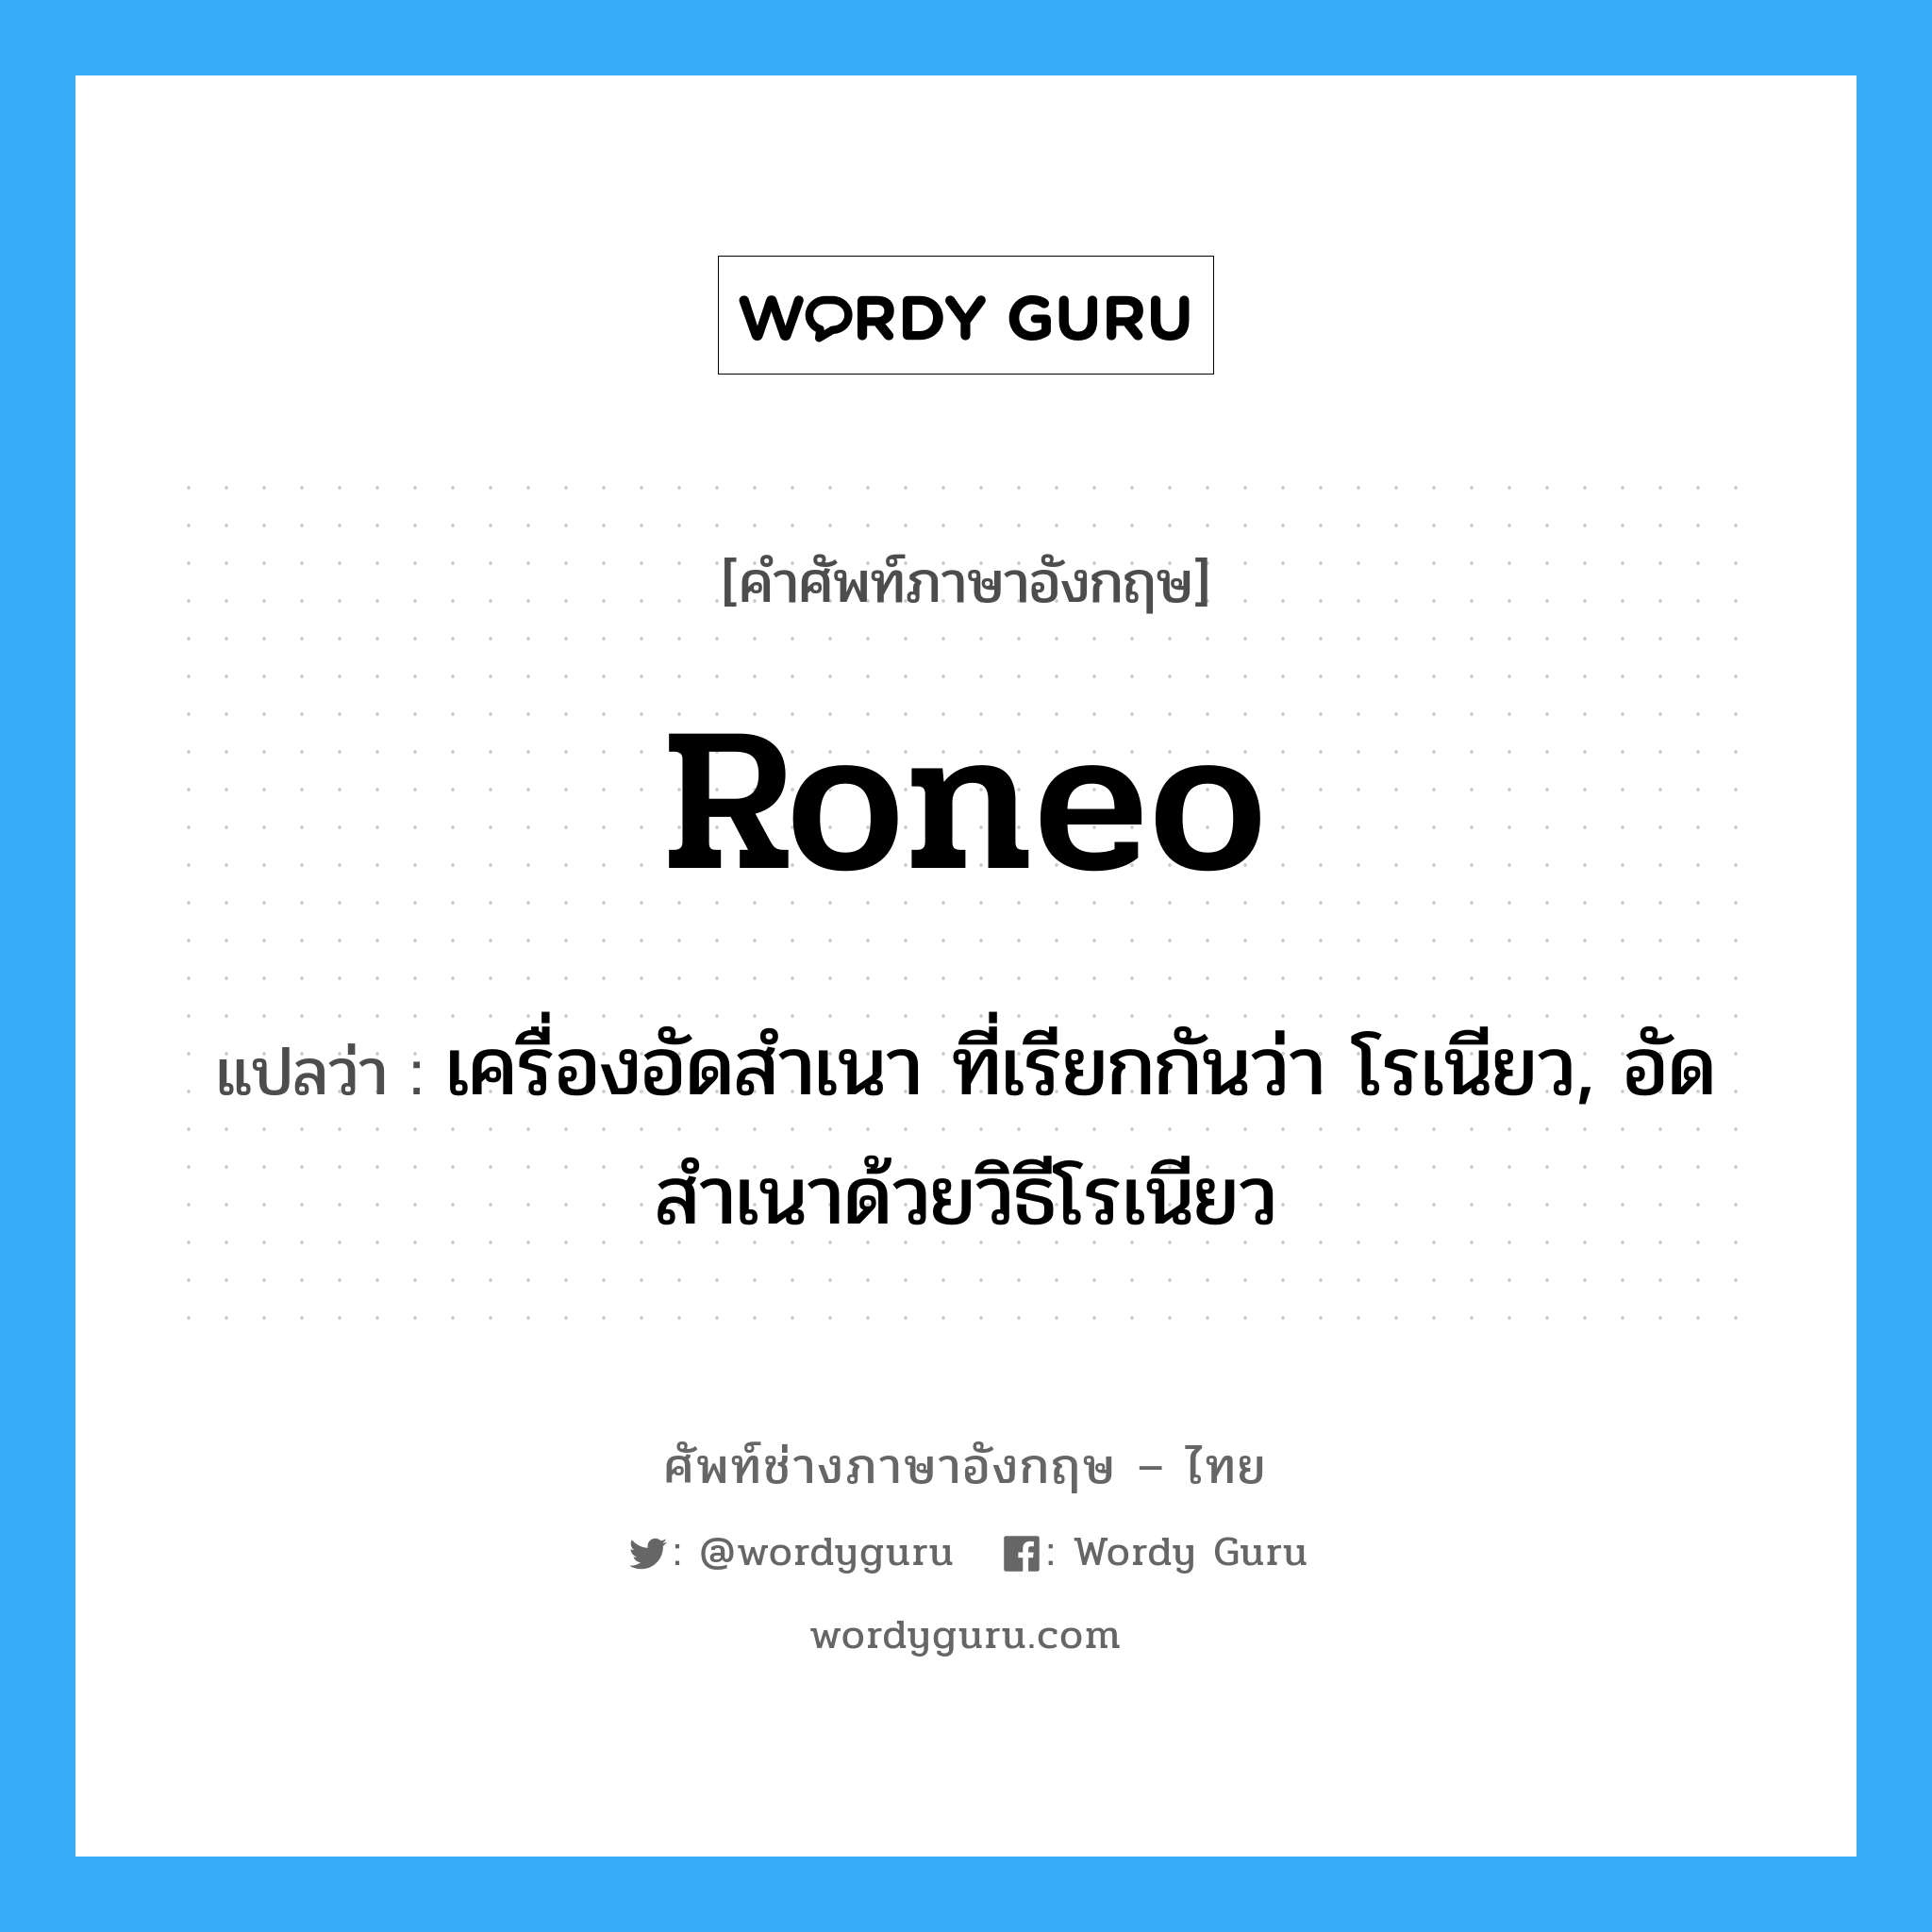 roneo แปลว่า?, คำศัพท์ช่างภาษาอังกฤษ - ไทย roneo คำศัพท์ภาษาอังกฤษ roneo แปลว่า เครื่องอัดสำเนา ที่เรียกกันว่า โรเนียว, อัดสำเนาด้วยวิธีโรเนียว